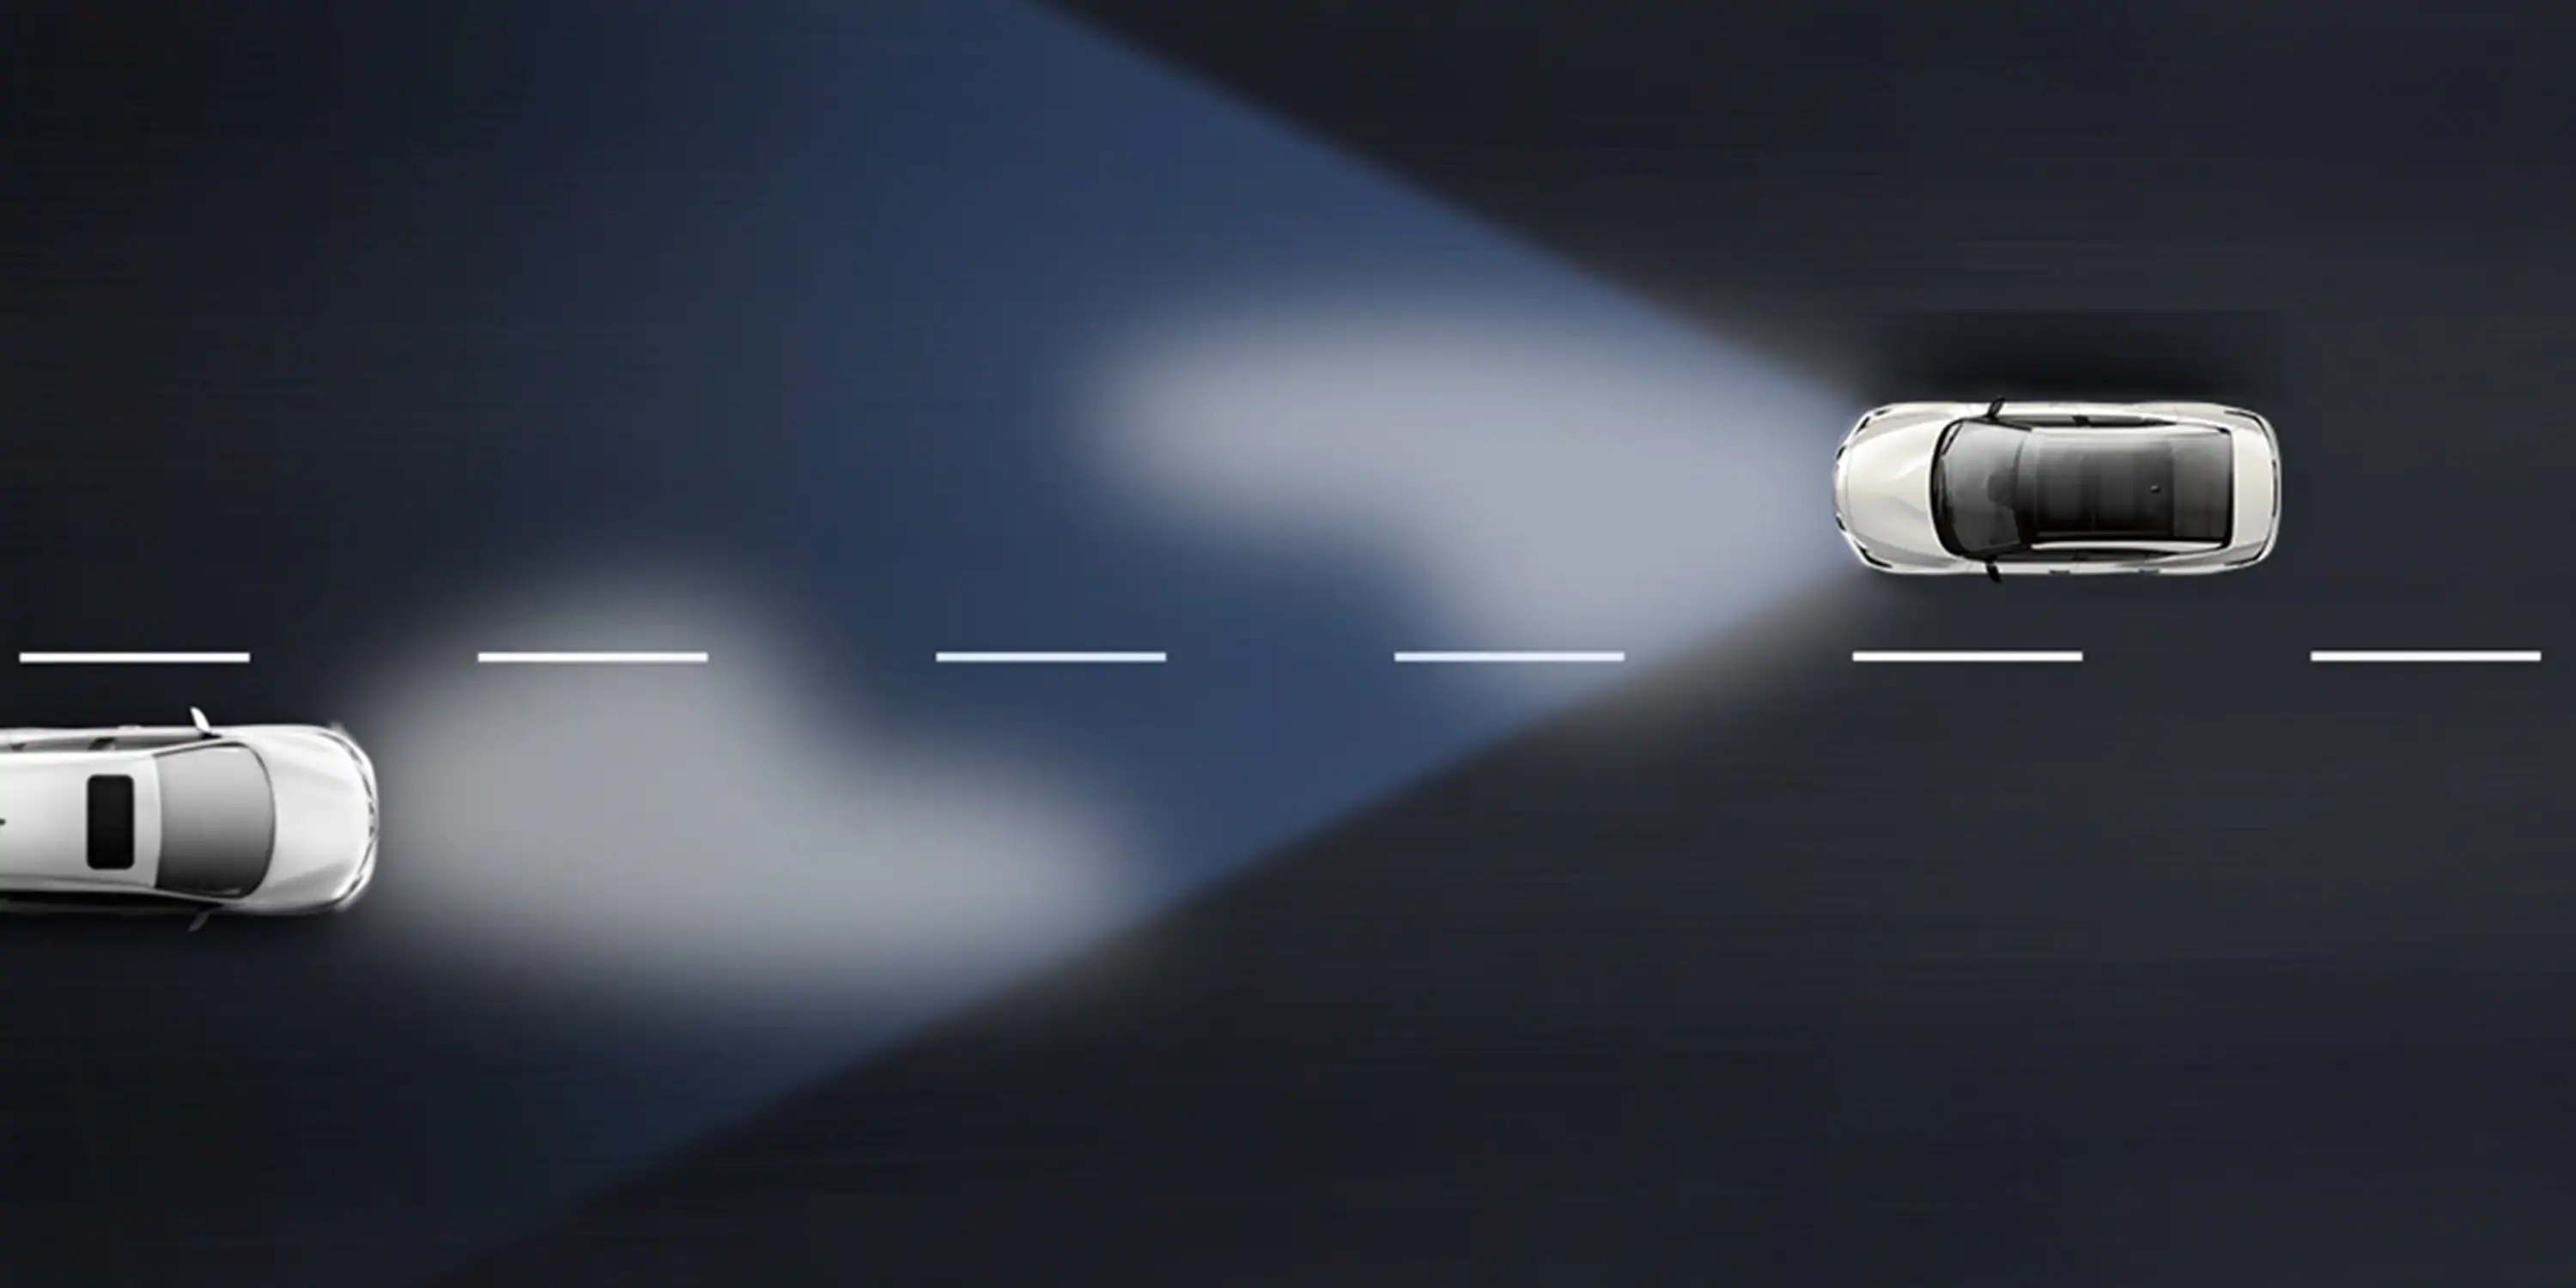 الضوء العالي لنظام سيارة نيسان ماكسيما